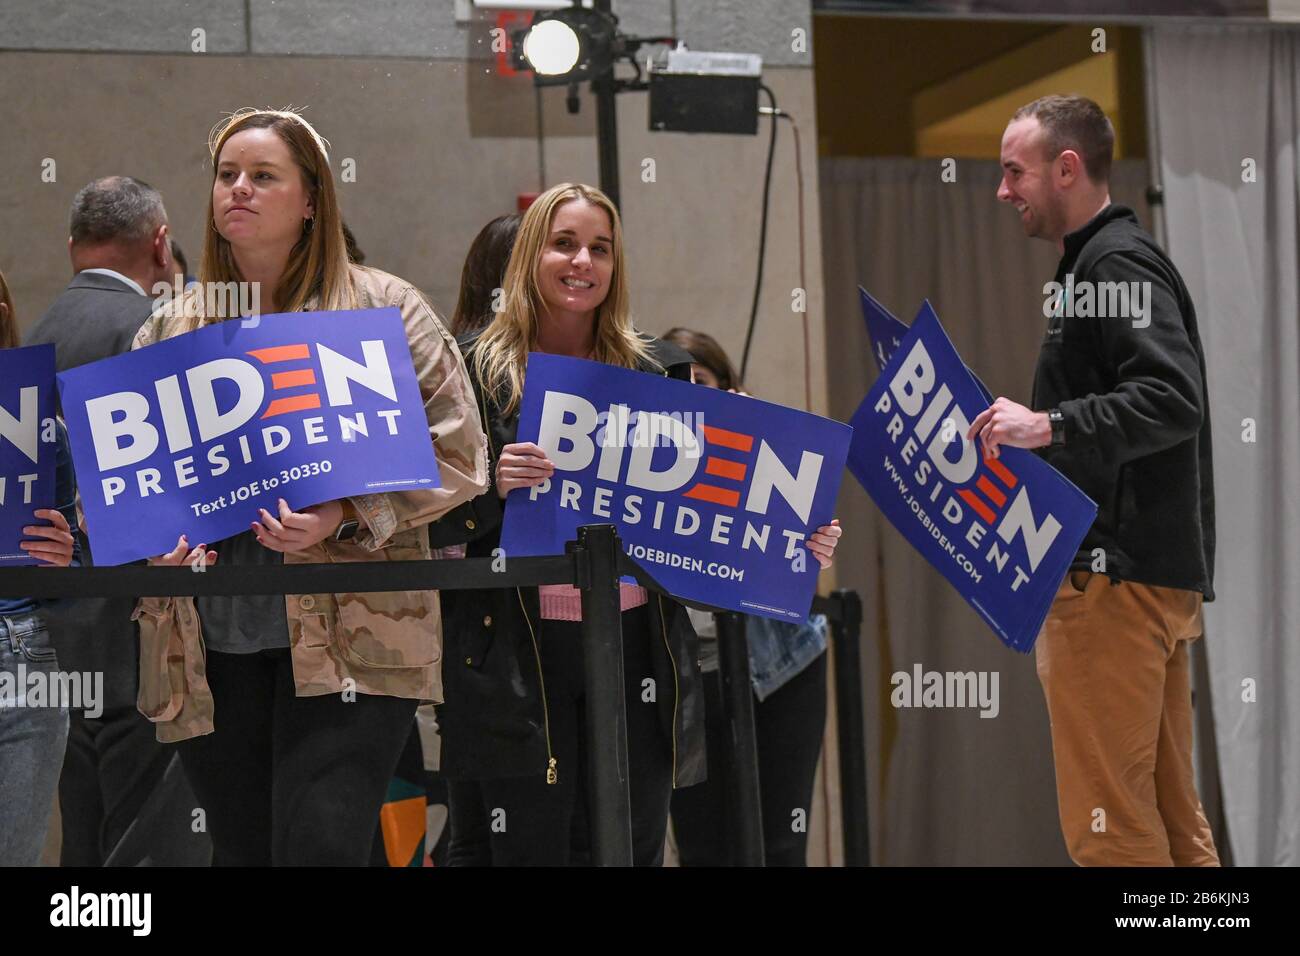 Joe Biden Anhänger, die politische Zeichen halten, warten darauf, dass der ehemalige Vizepräsident der Vereinigten Staaten von Amerika während der Urwahl im National Convention Center spricht - Stockfoto